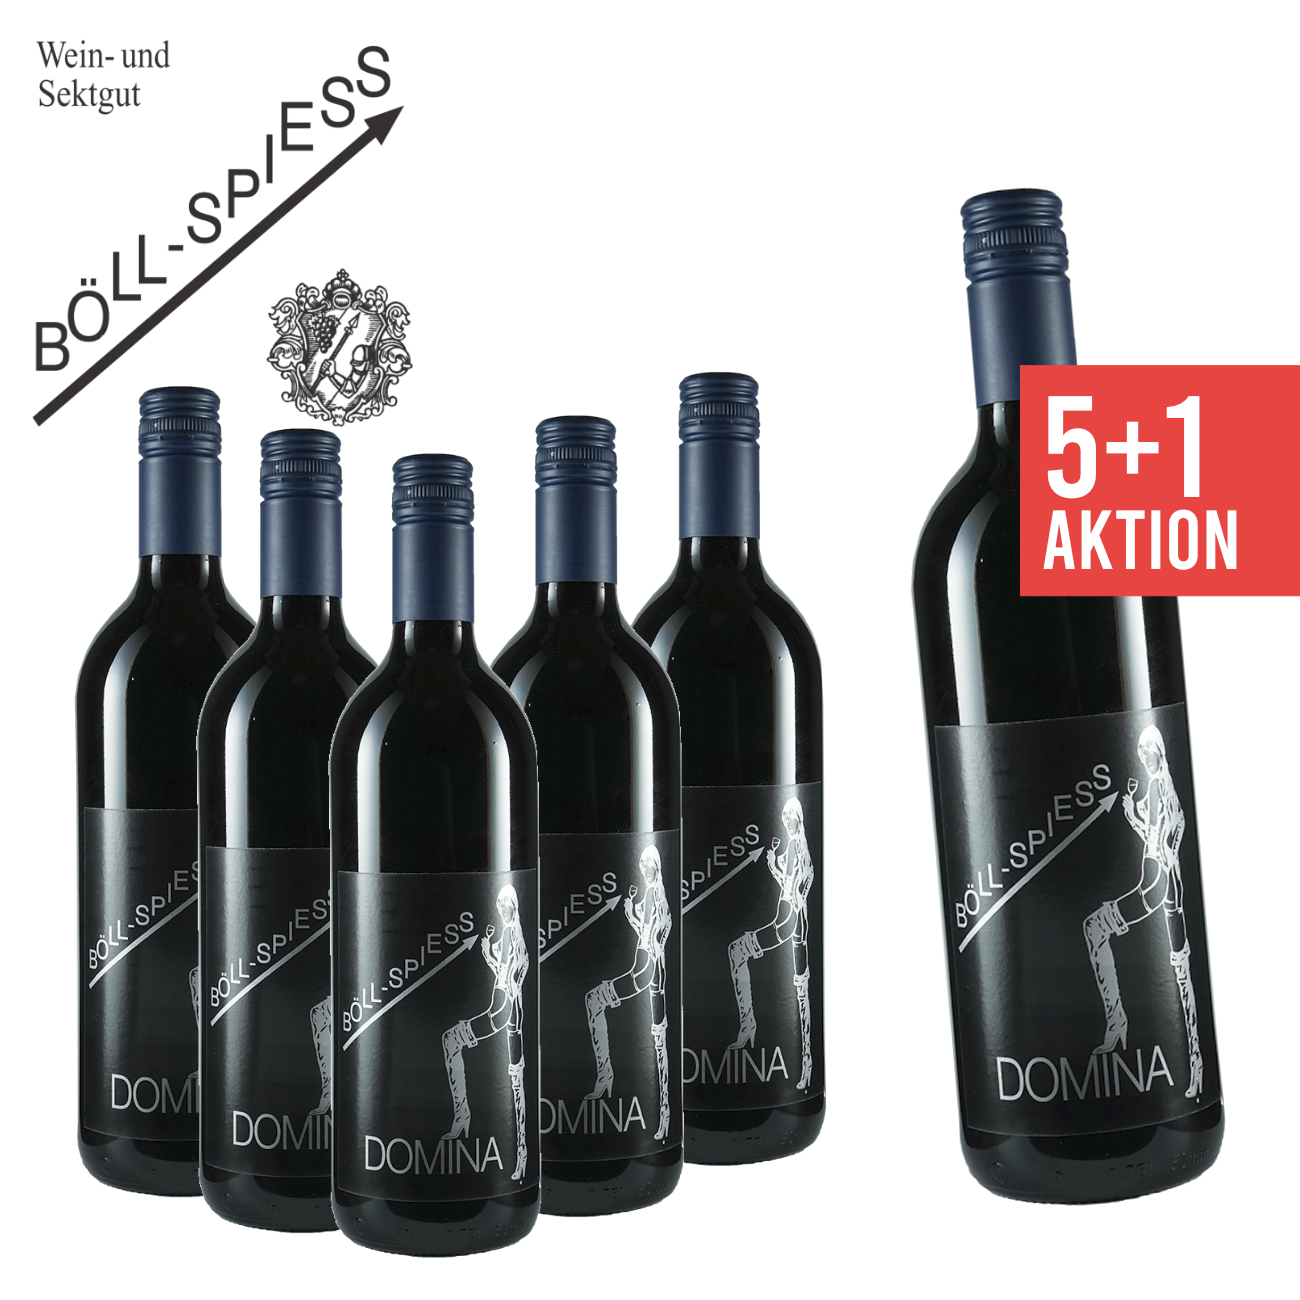 5+1 Domina Spätlese trocken 0,75 L - Weingut Böll-Spiess | Pfälzer Wein